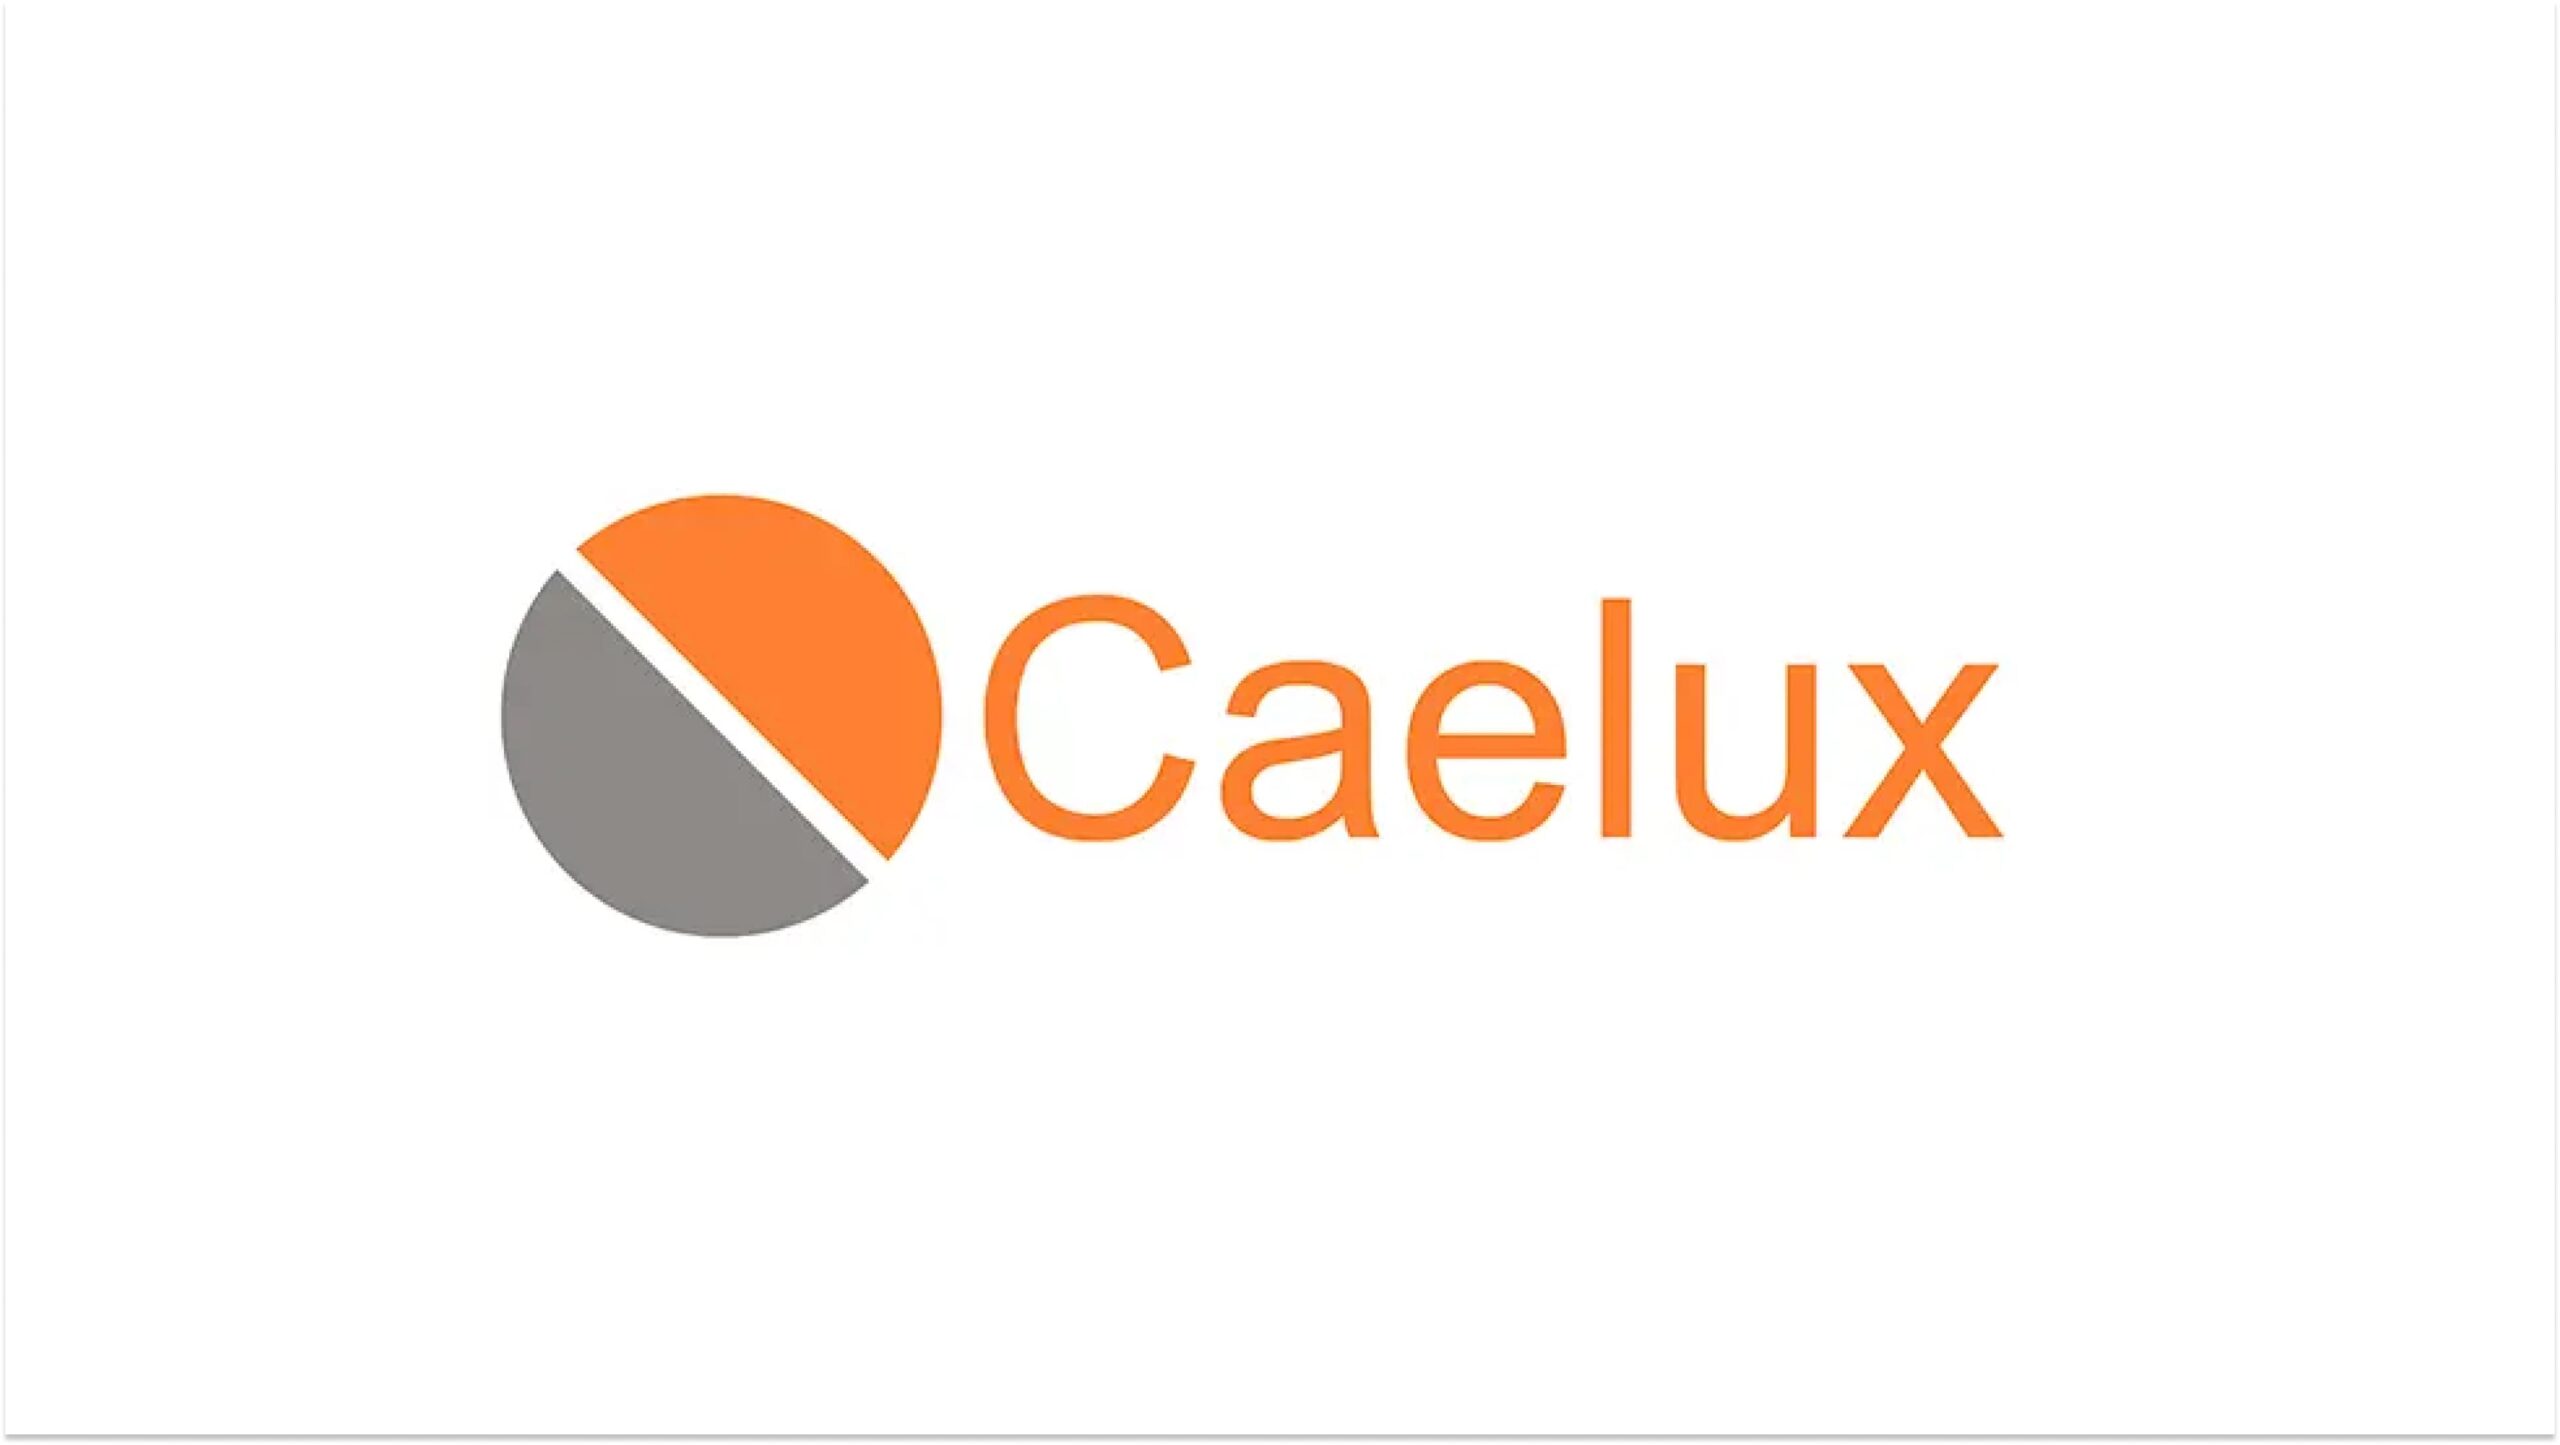 ペロブスカイト太陽電池を提供するCaelux Corporationへグローバル・ブレイン株式会社が出資